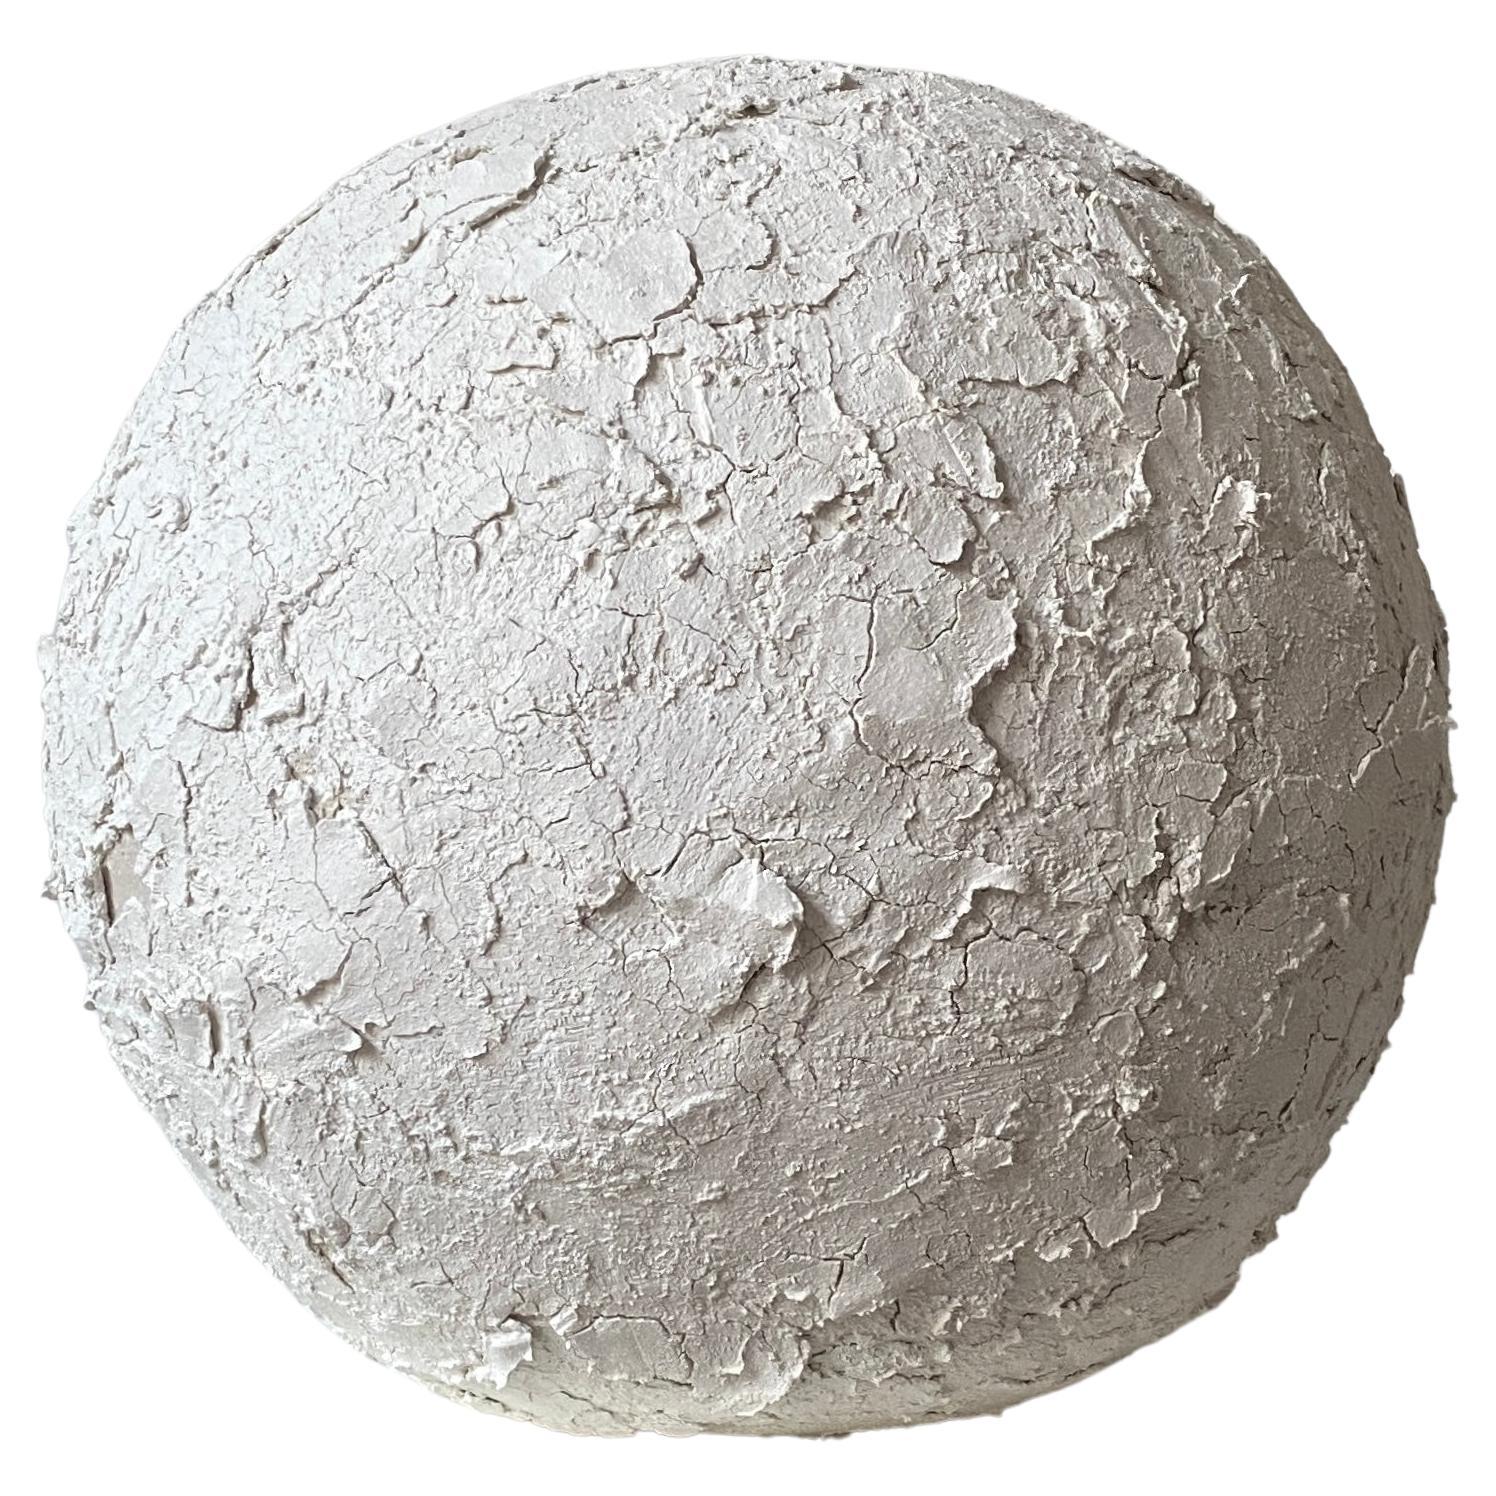 White Crust Sphere by Laura Pasquino